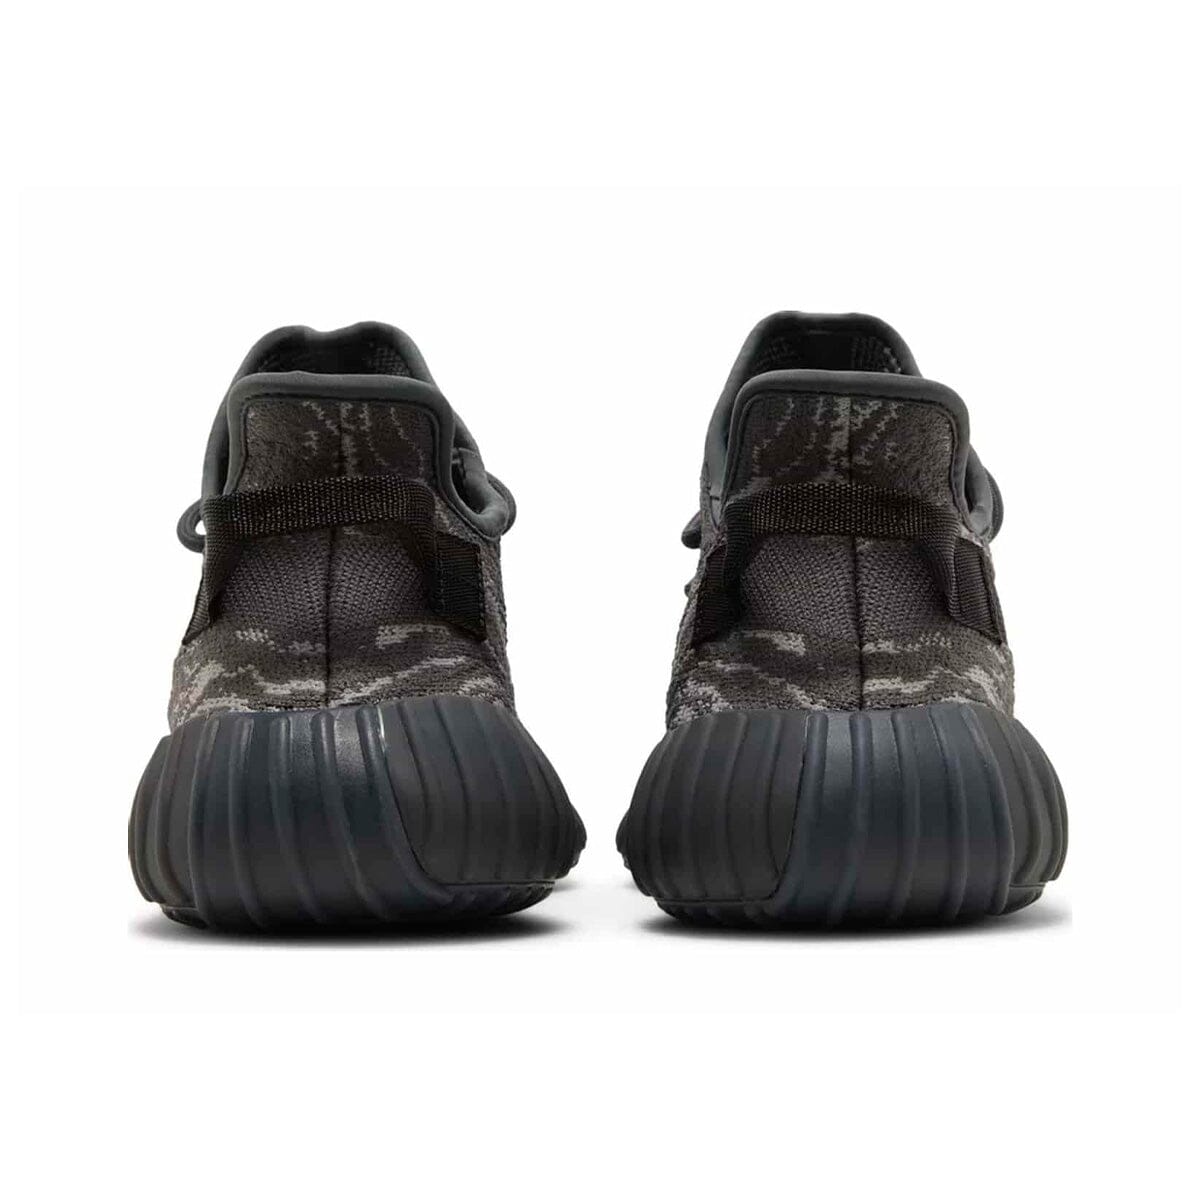 Adidas Yeezy Boost 350 V2 MX Dark Salt Yeezy Blizz Sneakers 